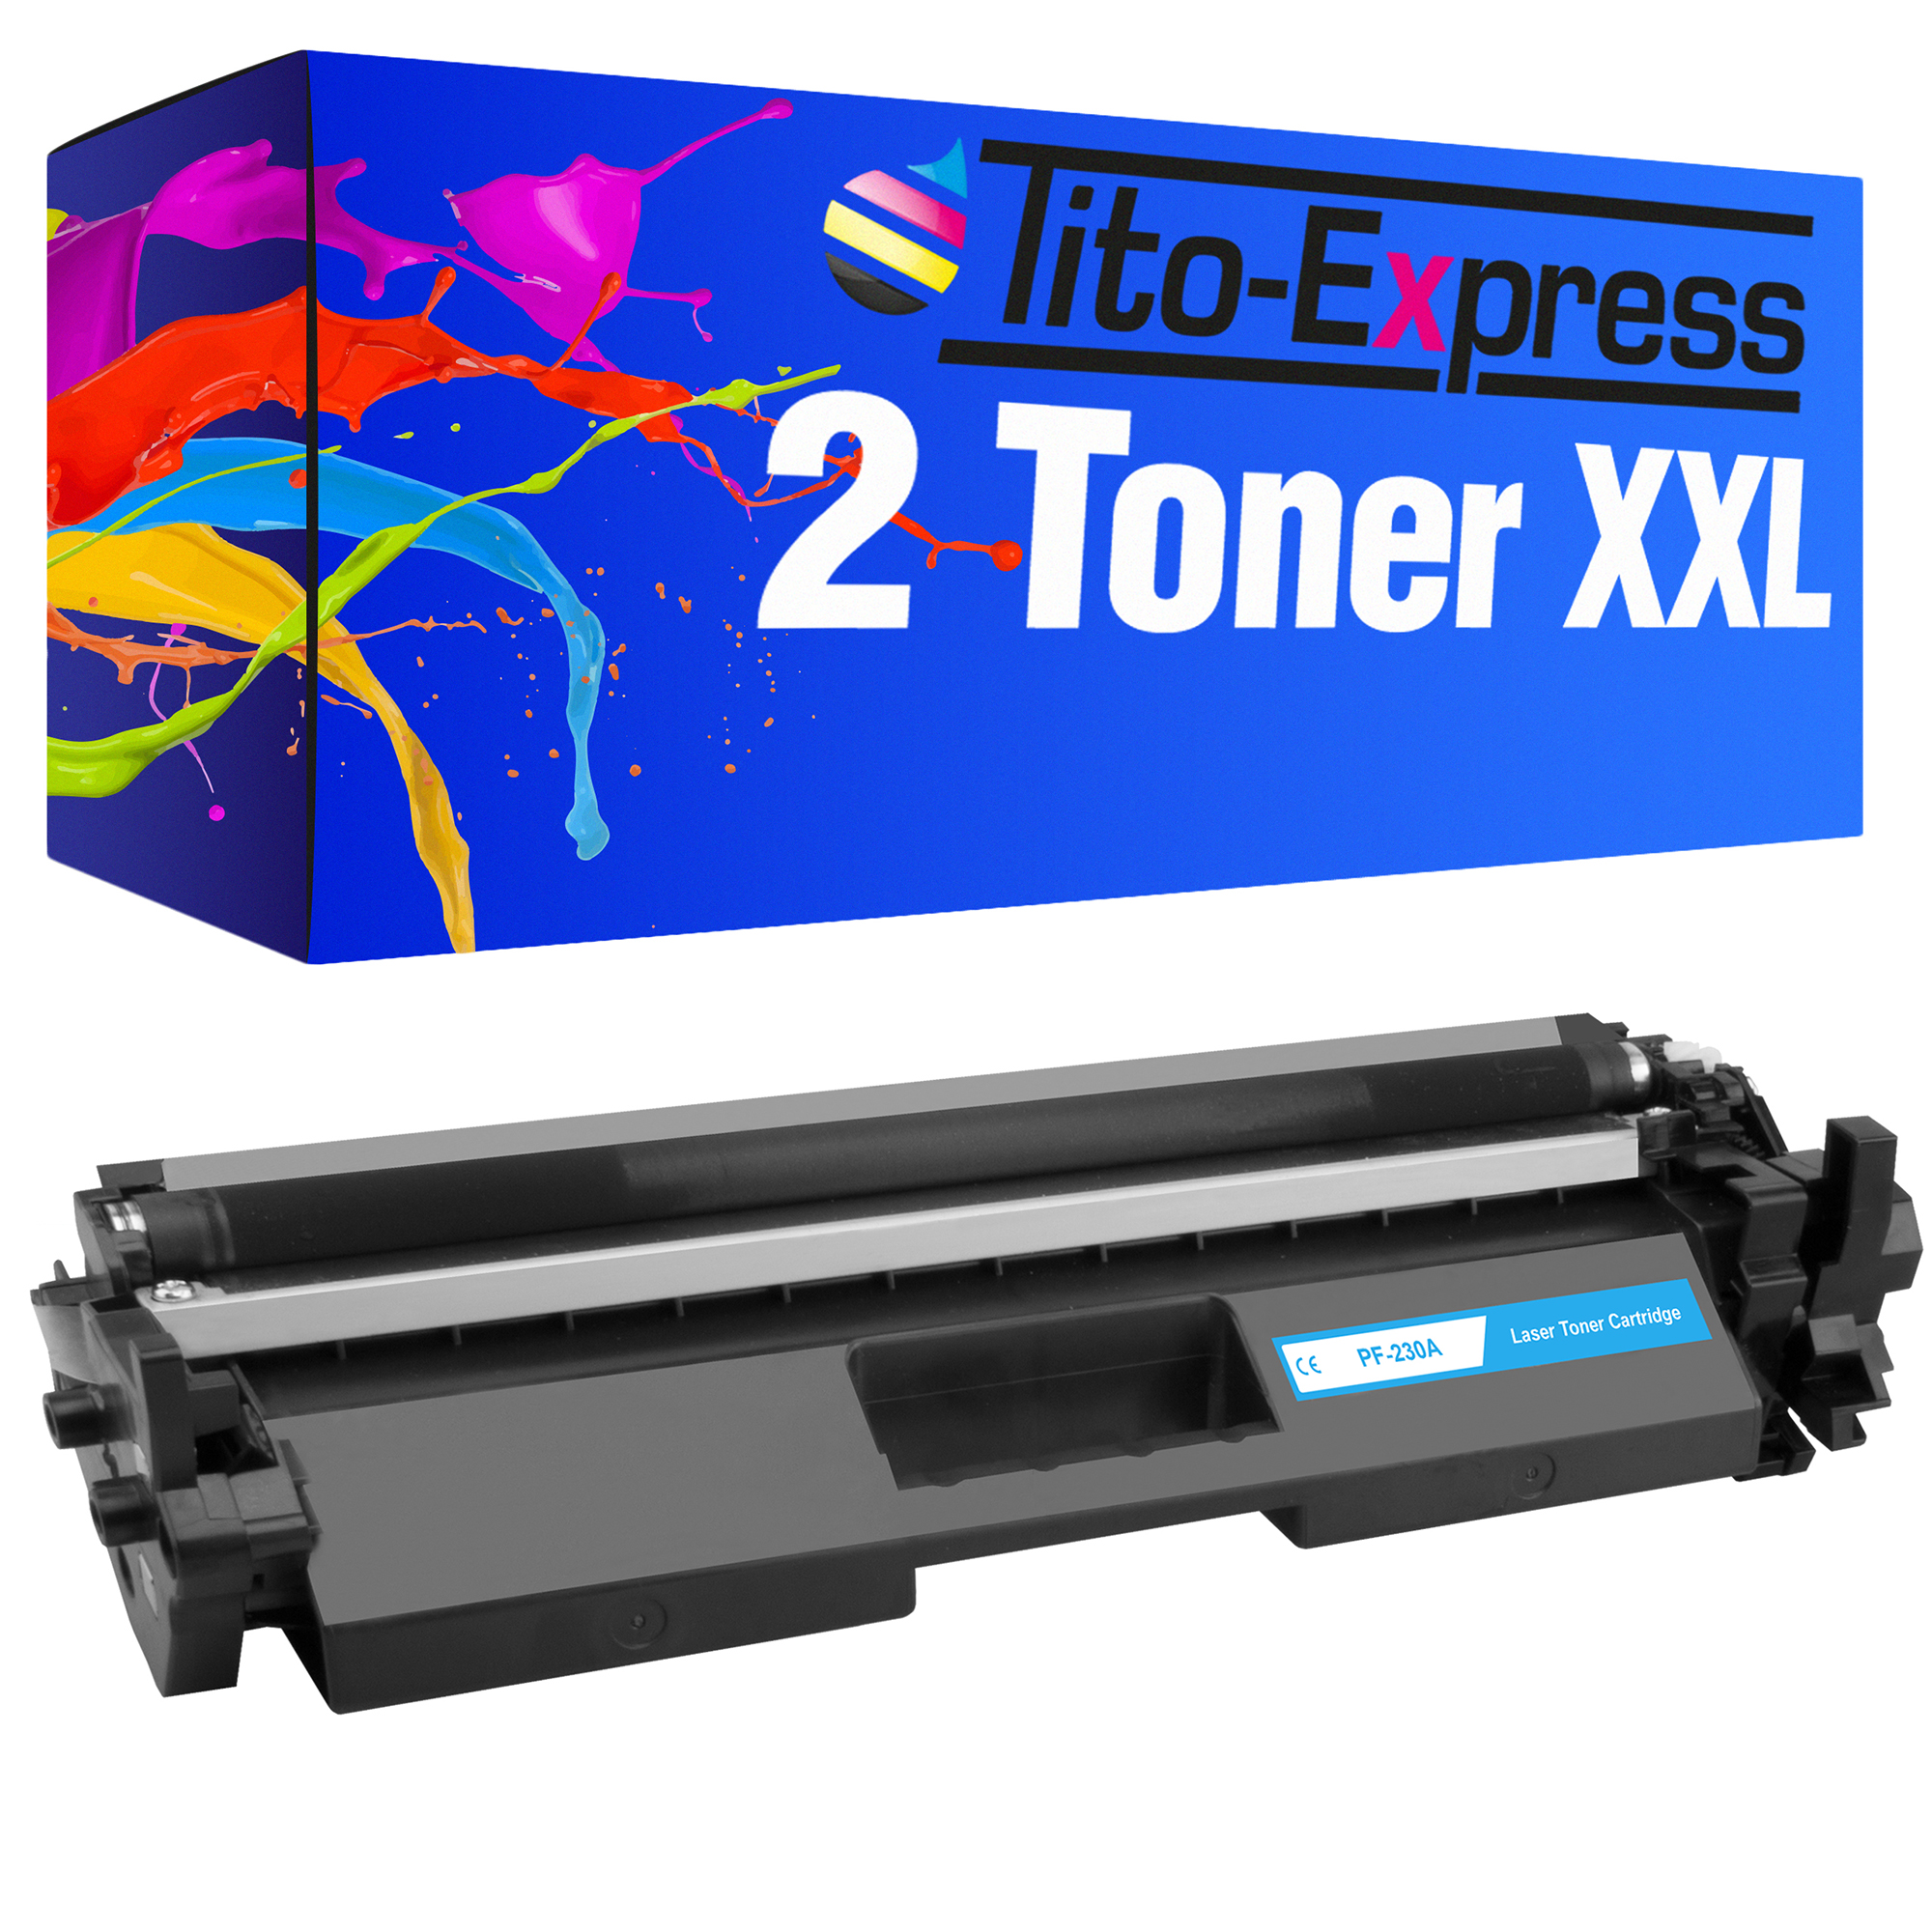 Toner CF230A TITO-EXPRESS HP 2 ersetzt black PLATINUMSERIE (CF230A) 30A Toner